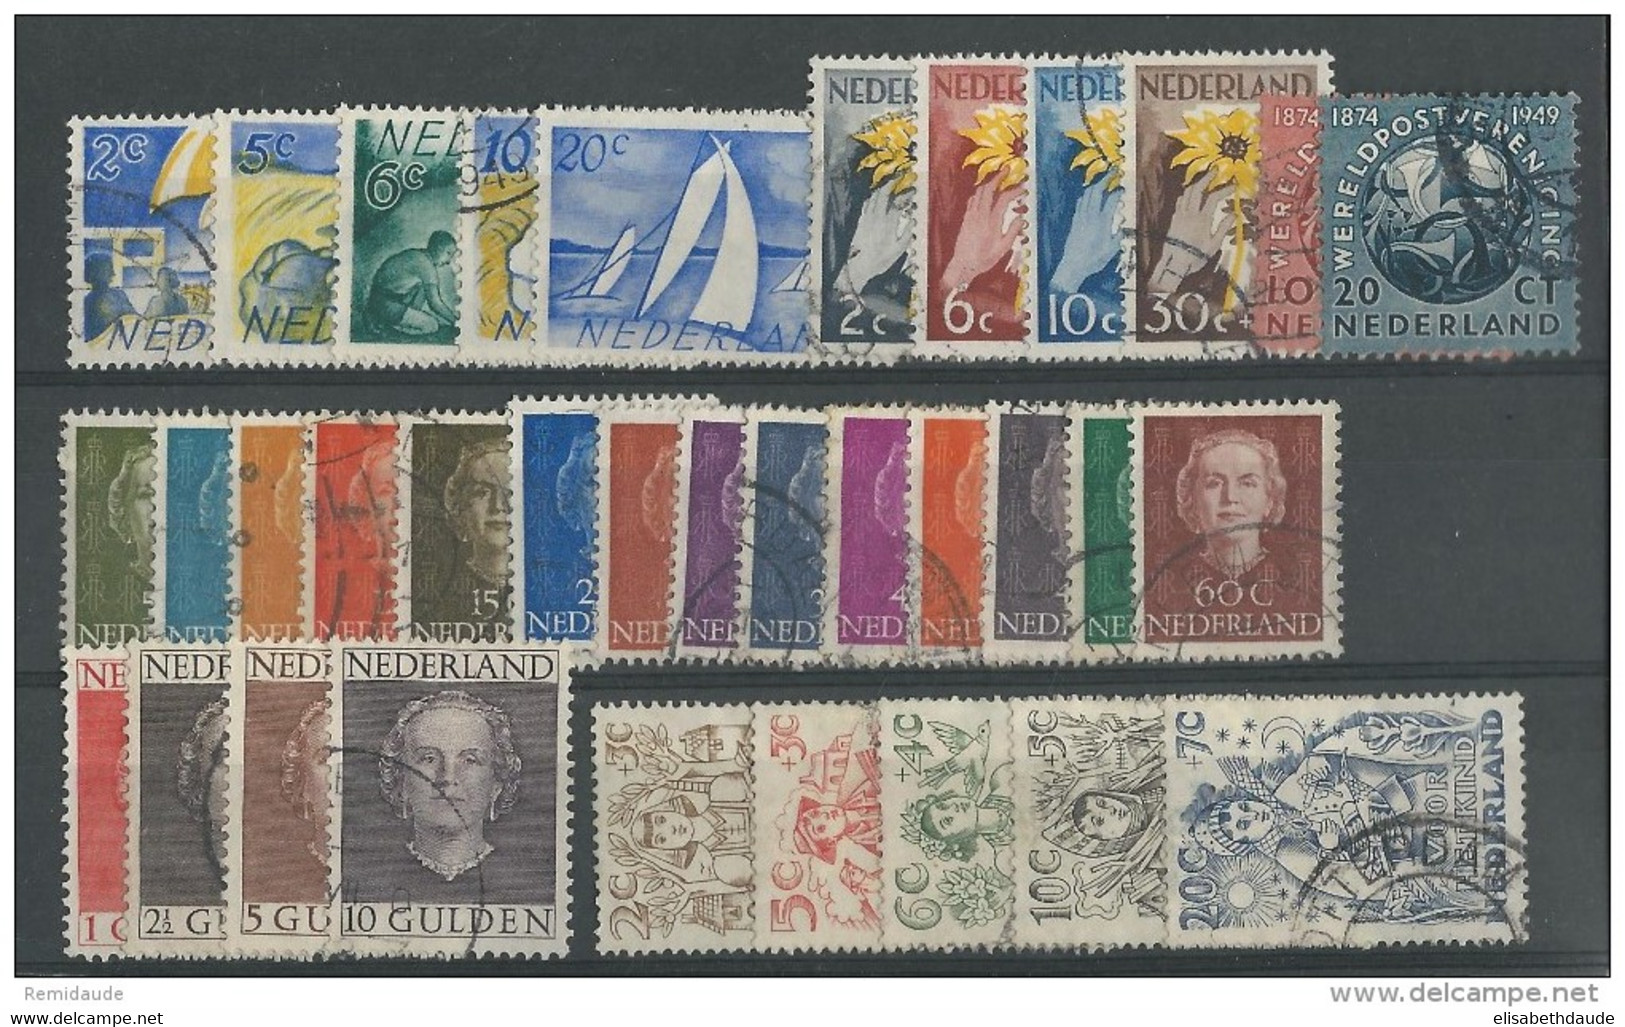 NEDERLAND - 1949 ANNEE COMPLETE - YVERT N° 504/534 OBLITERES - COTE = 61 EUROS - Full Years